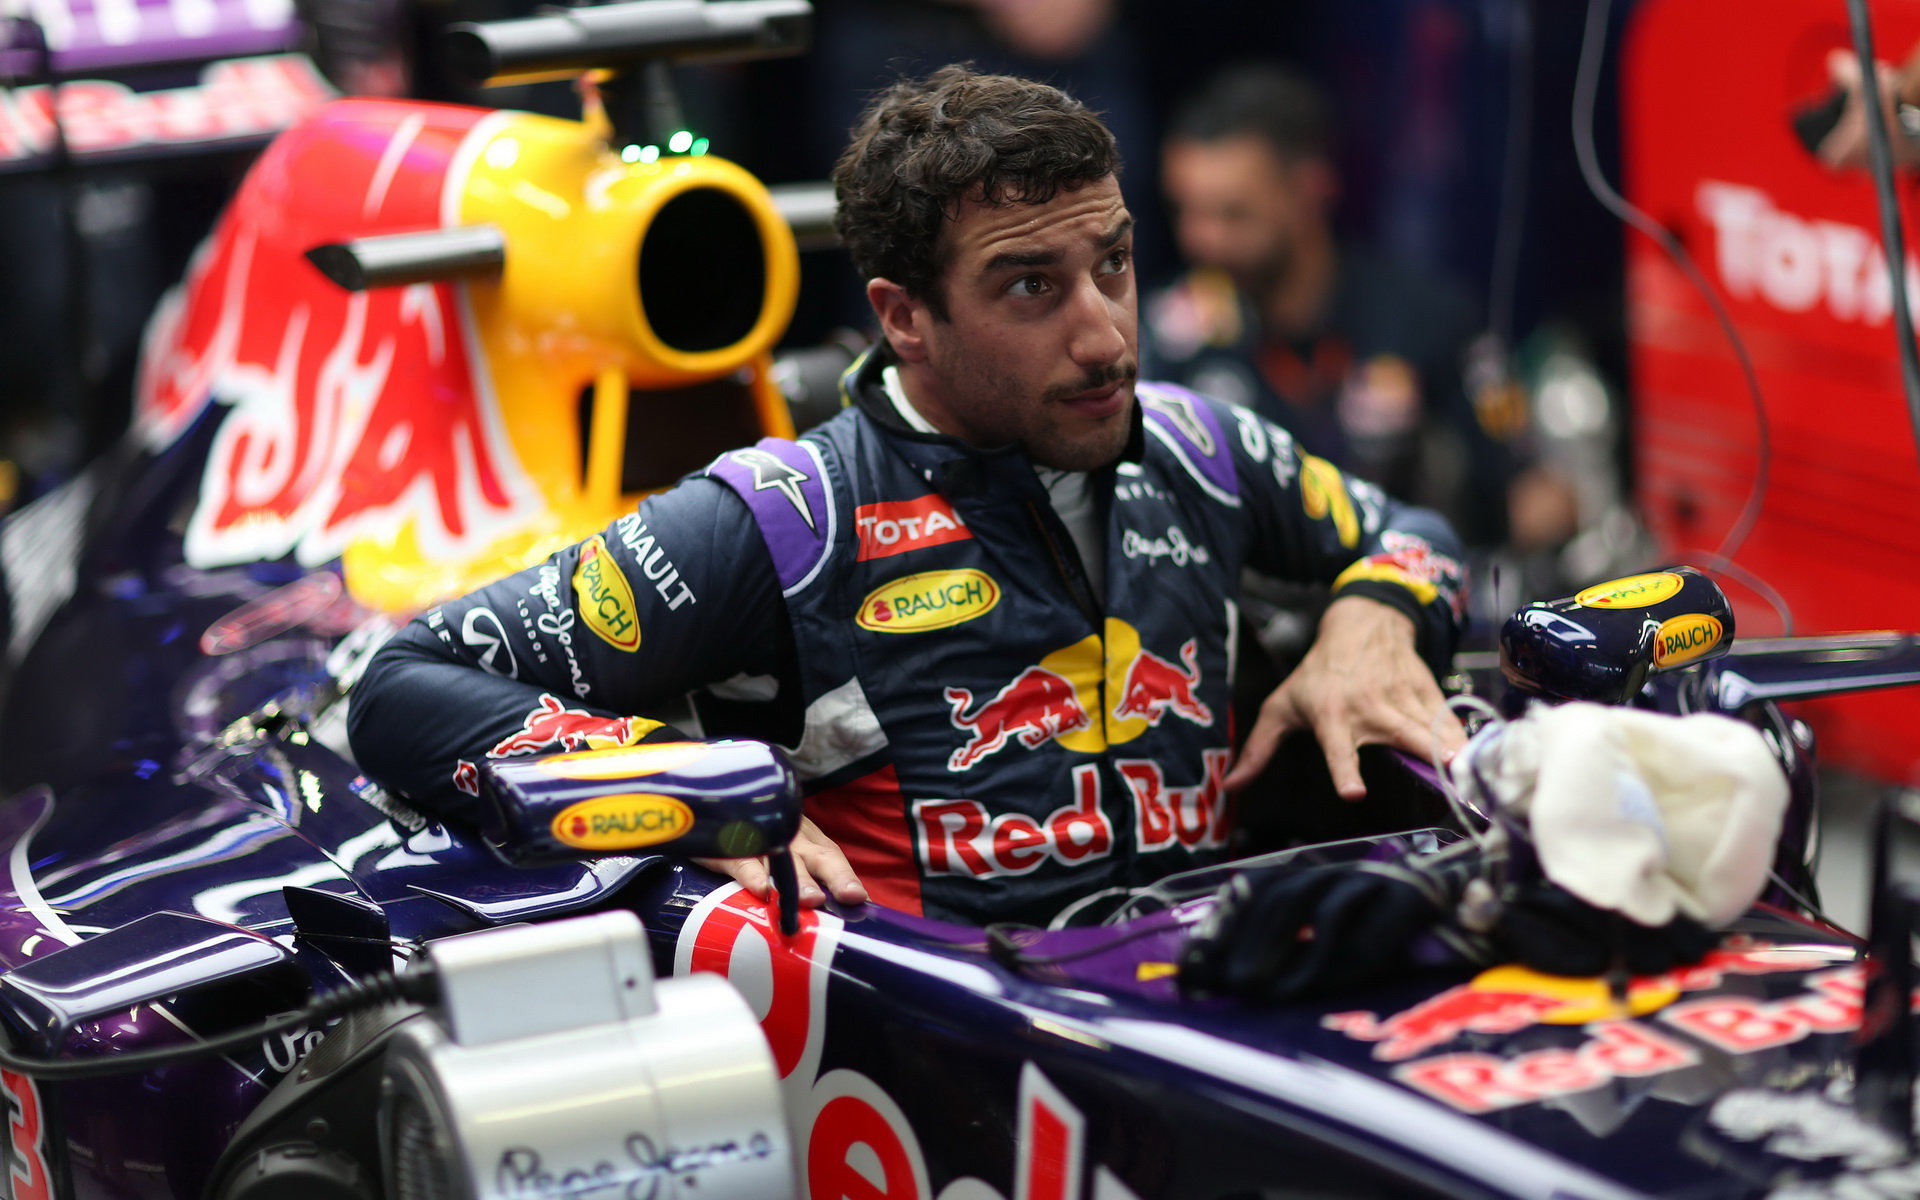 Daniel Ricciardo ani Red Bull nechtějí z F1 vystupovat, tvrdí jezdec